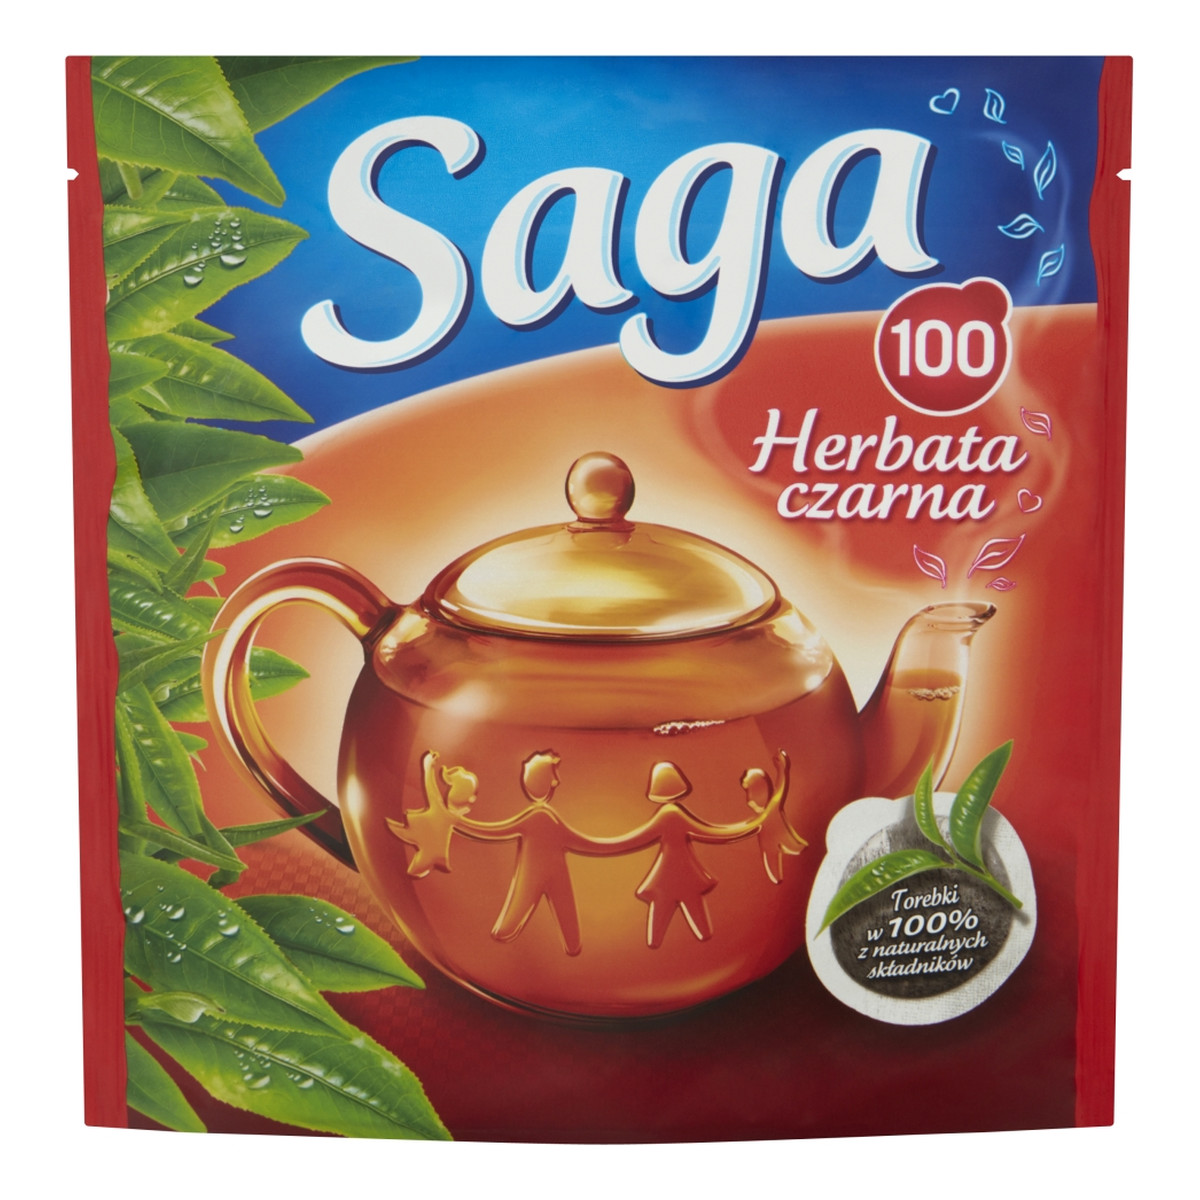 Saga Herbata czarna 100 torebek 140g